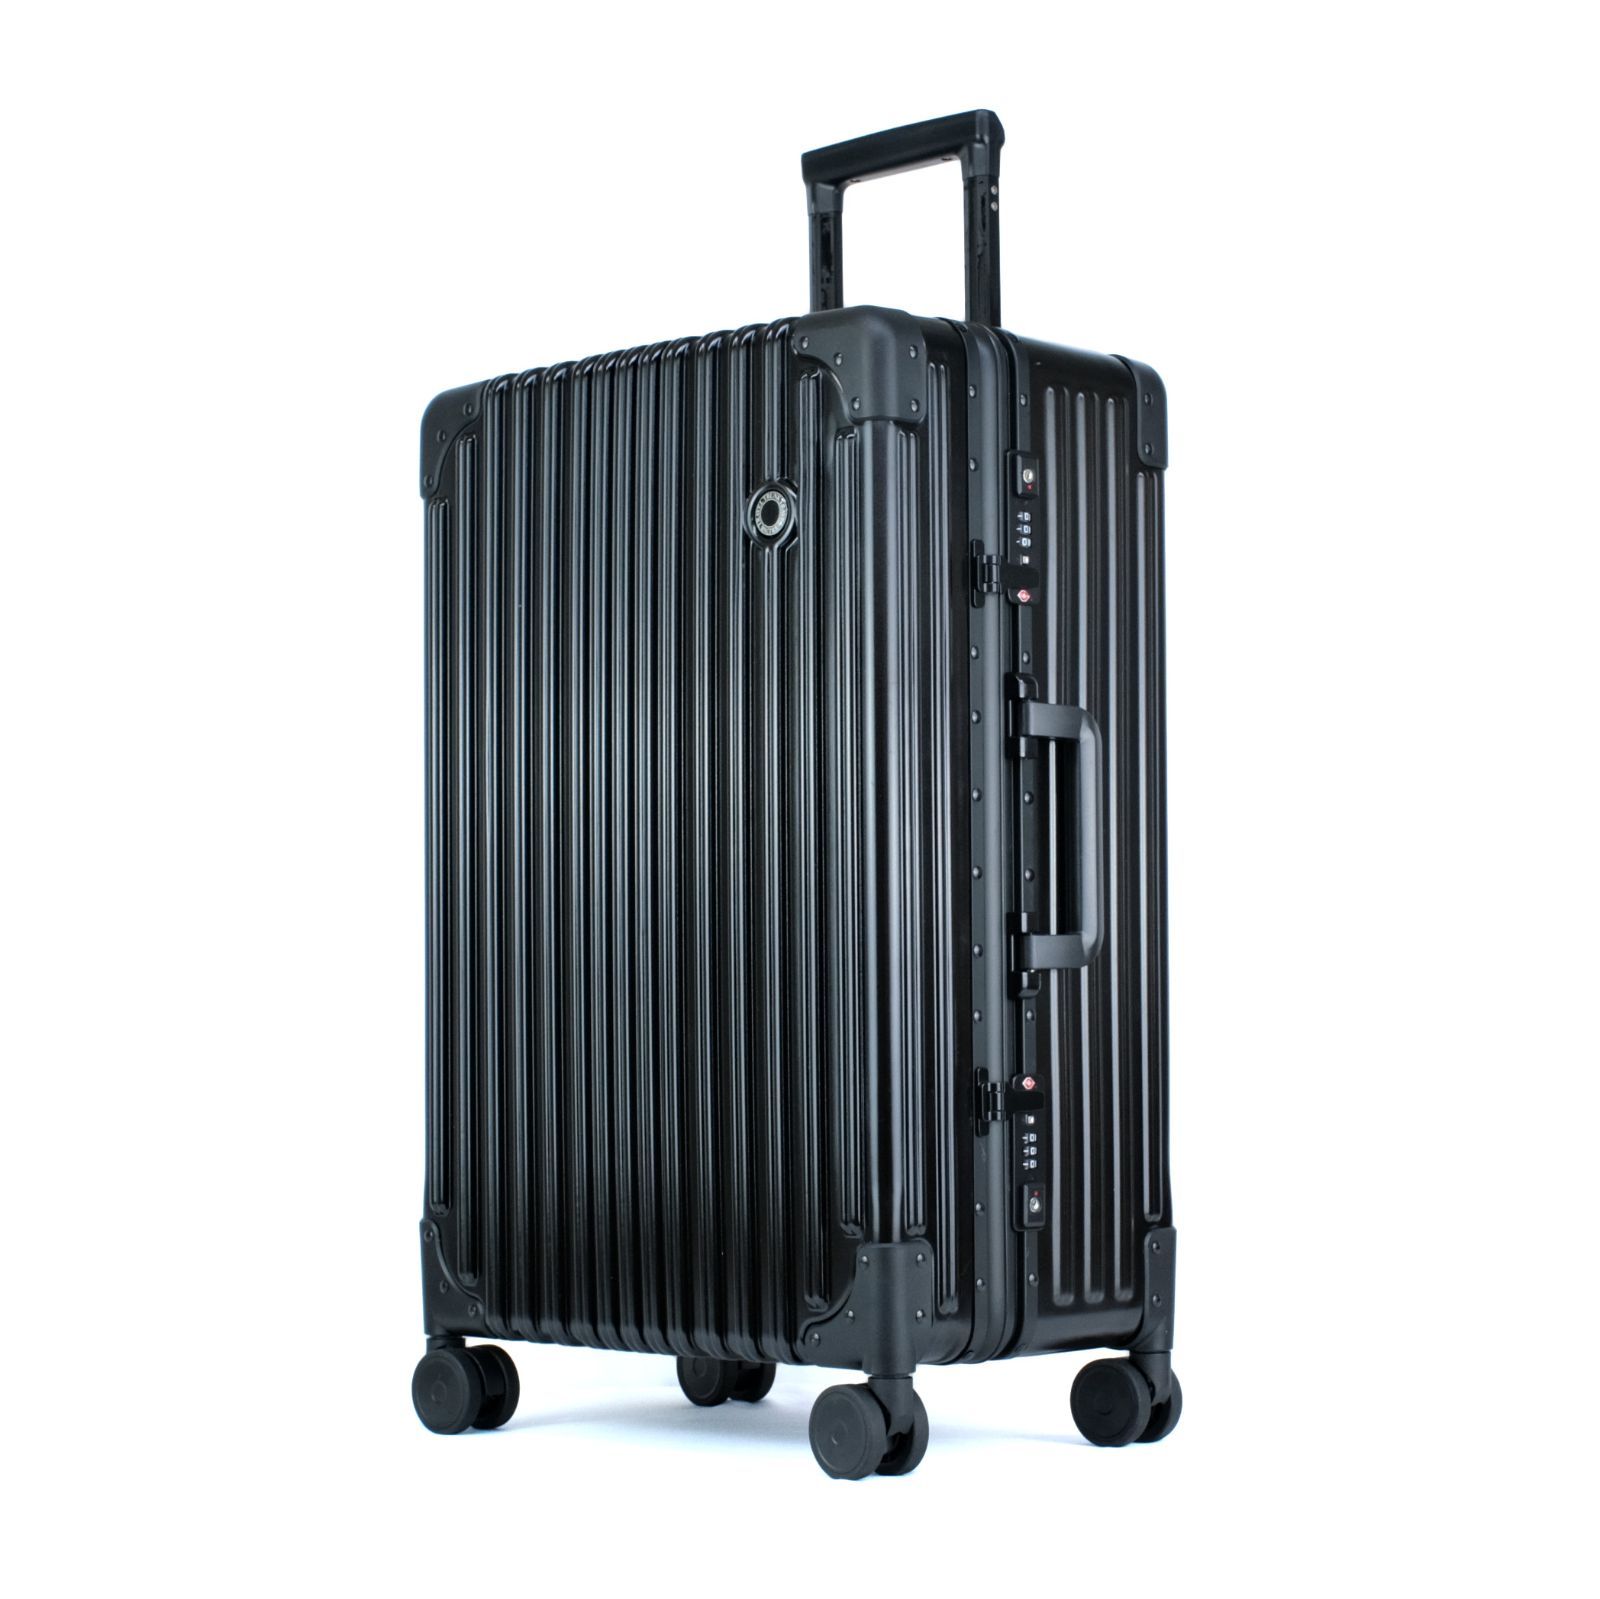 [TRUNKTRAVEL] スーツケース キャリーバッグ Mサイズ ブラック アルミフレーム TSAロック 軽量 キャリーケース スーツ ケース  (M(5~7泊) 24インチ, ブラック)